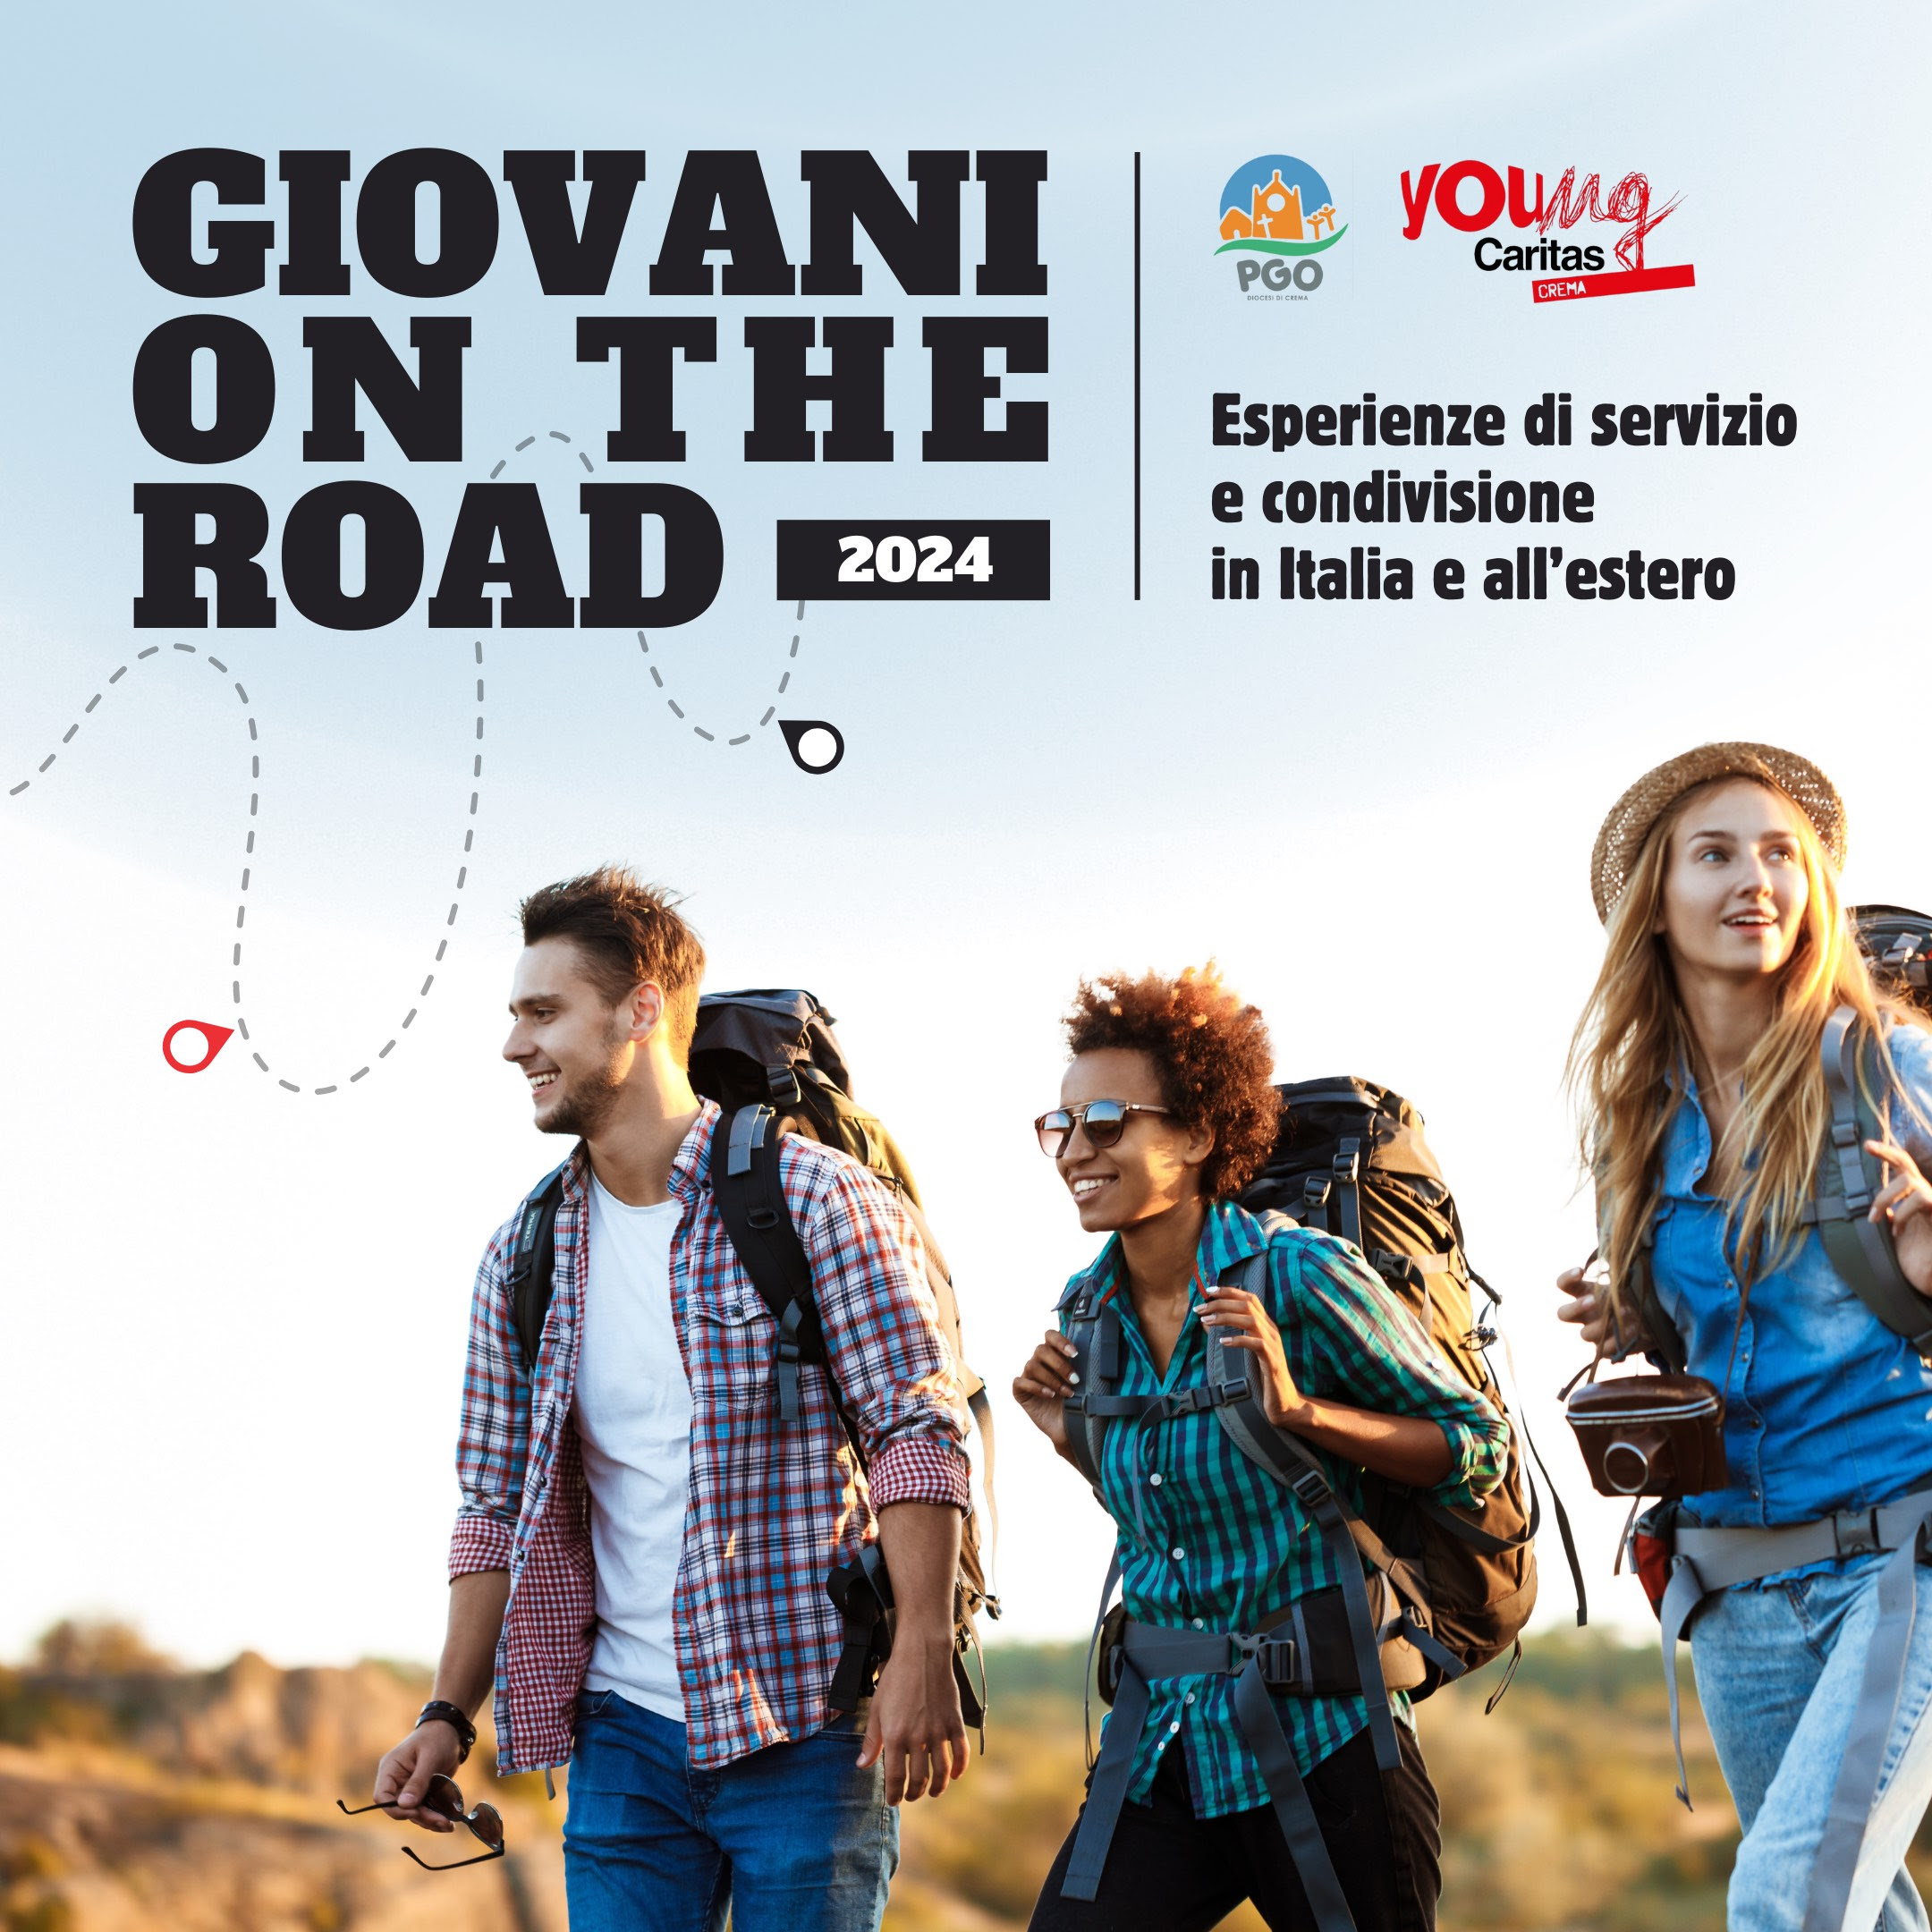 PGO, campi Estivi: aperte le iscrizioni a Giovani on the road